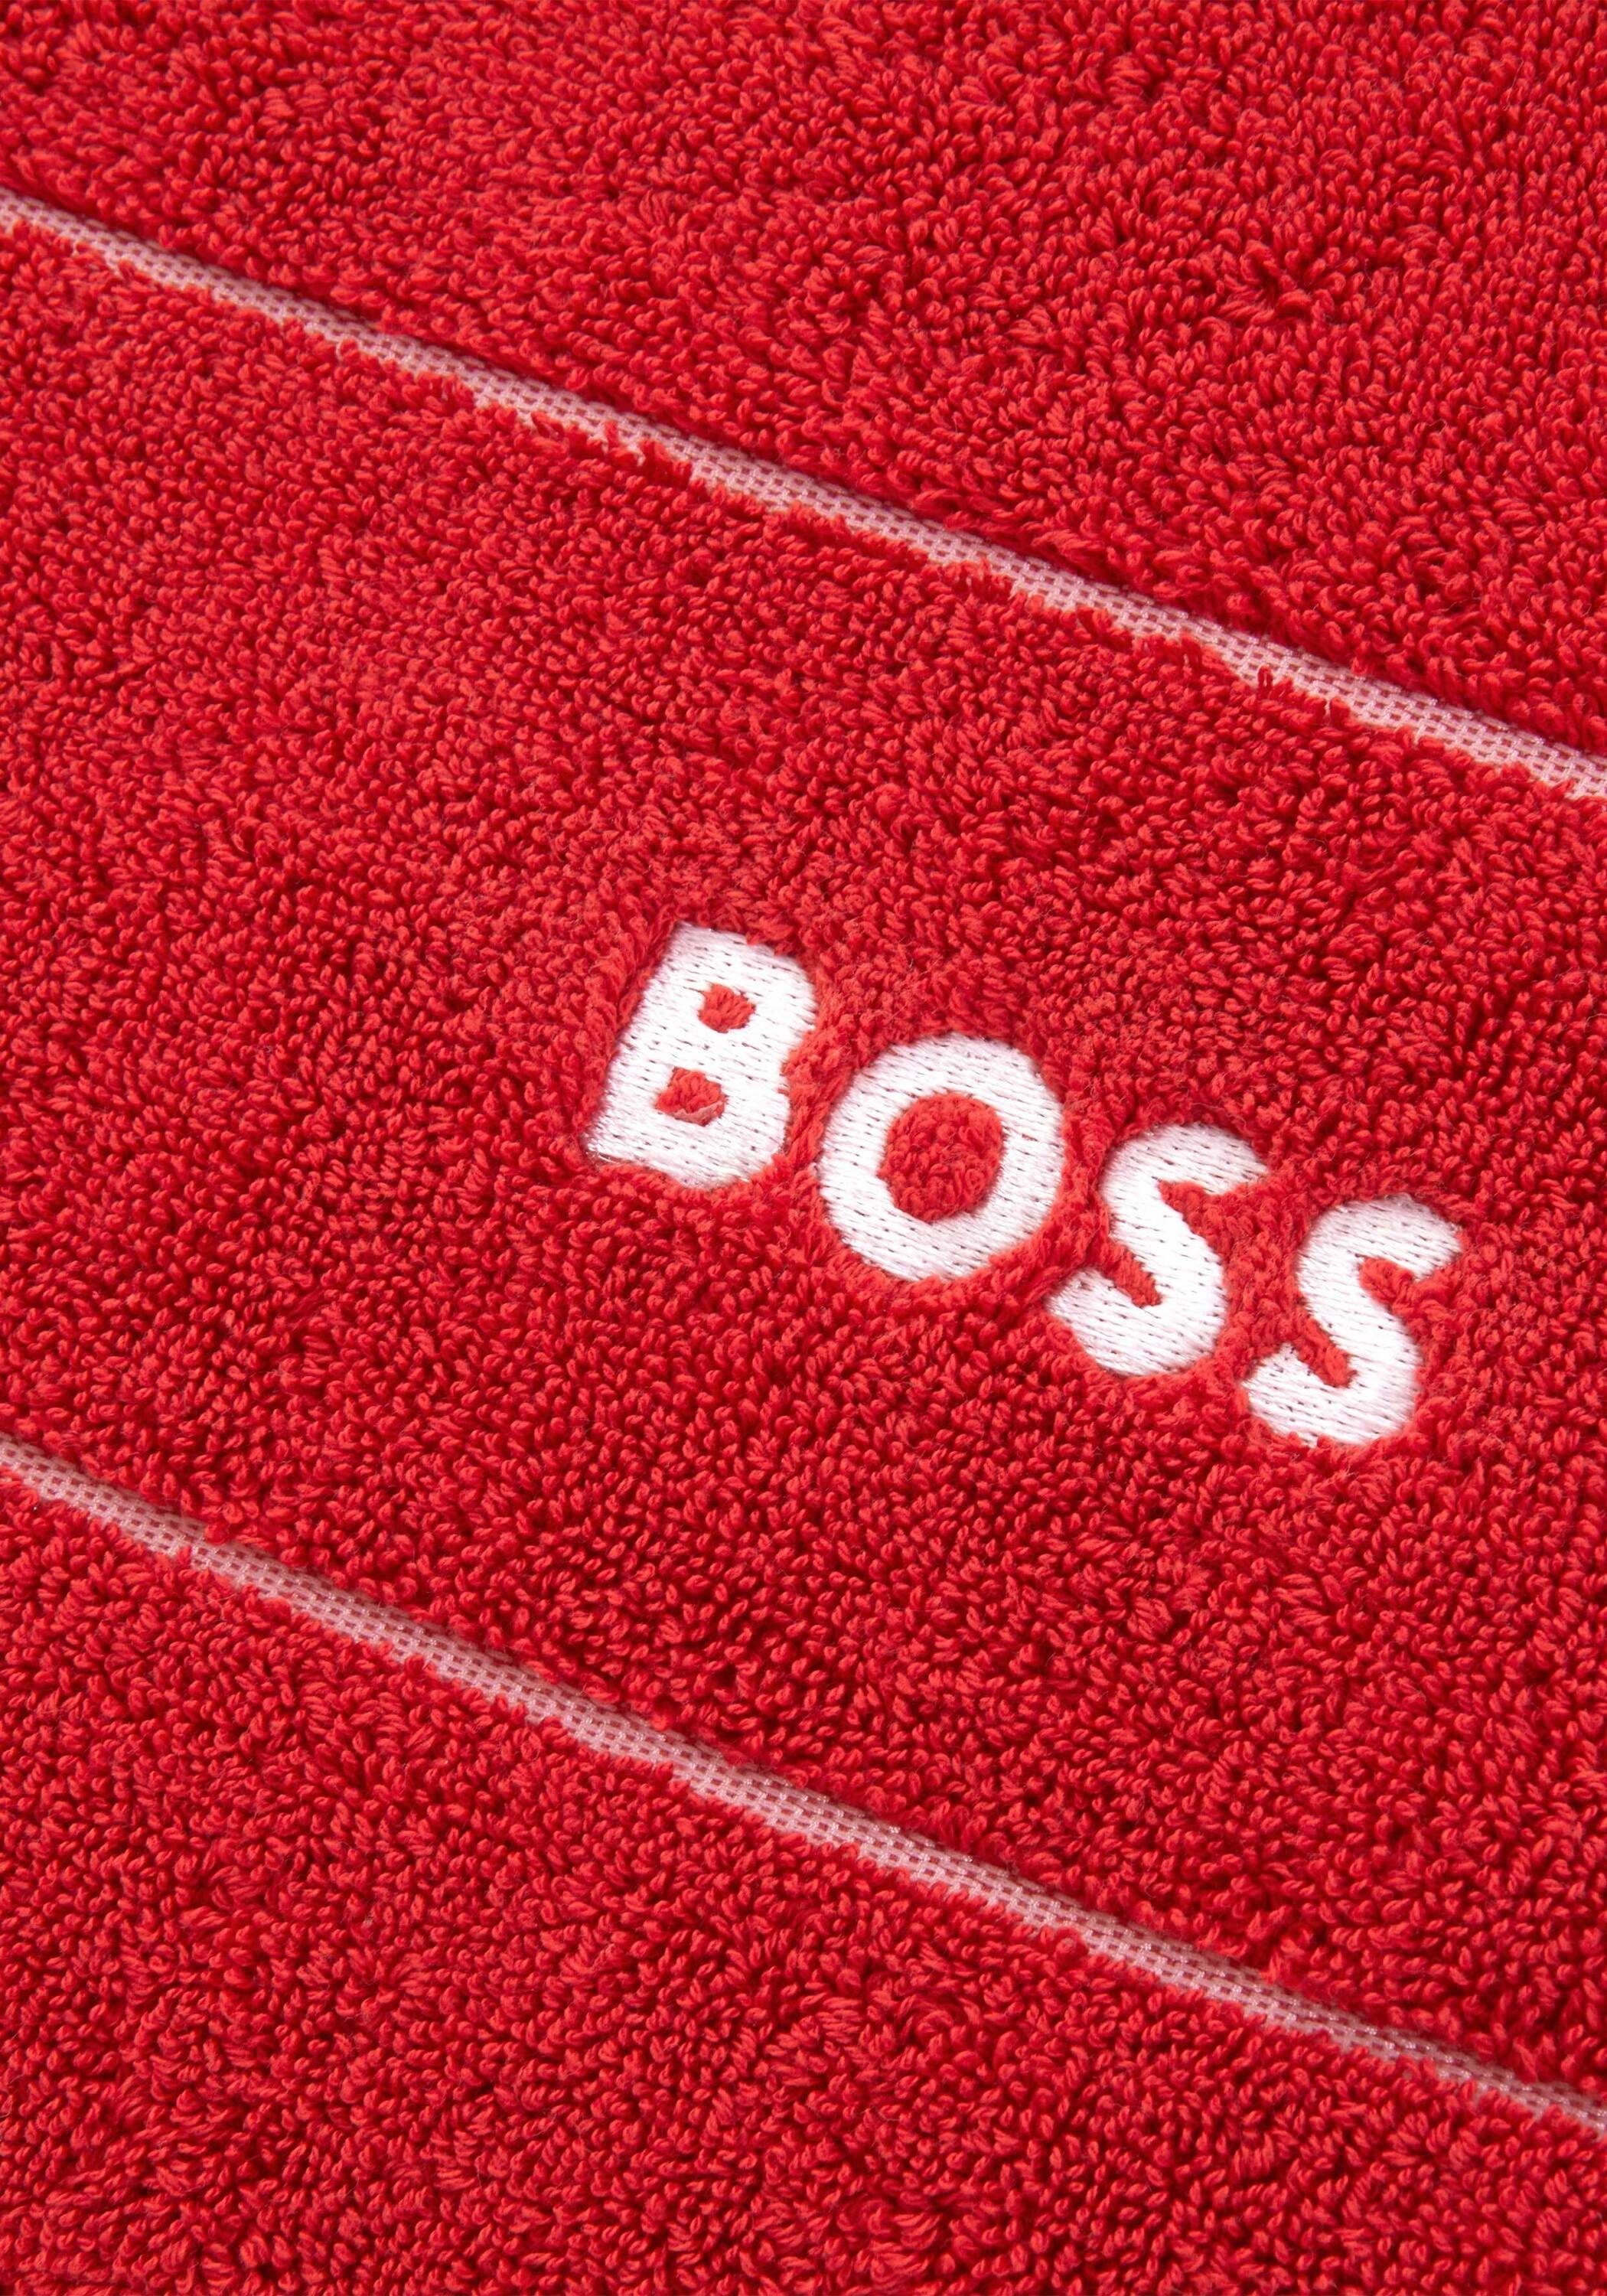 Hugo Boss Home Duschtuch PLAIN, mit REDN modernem Design